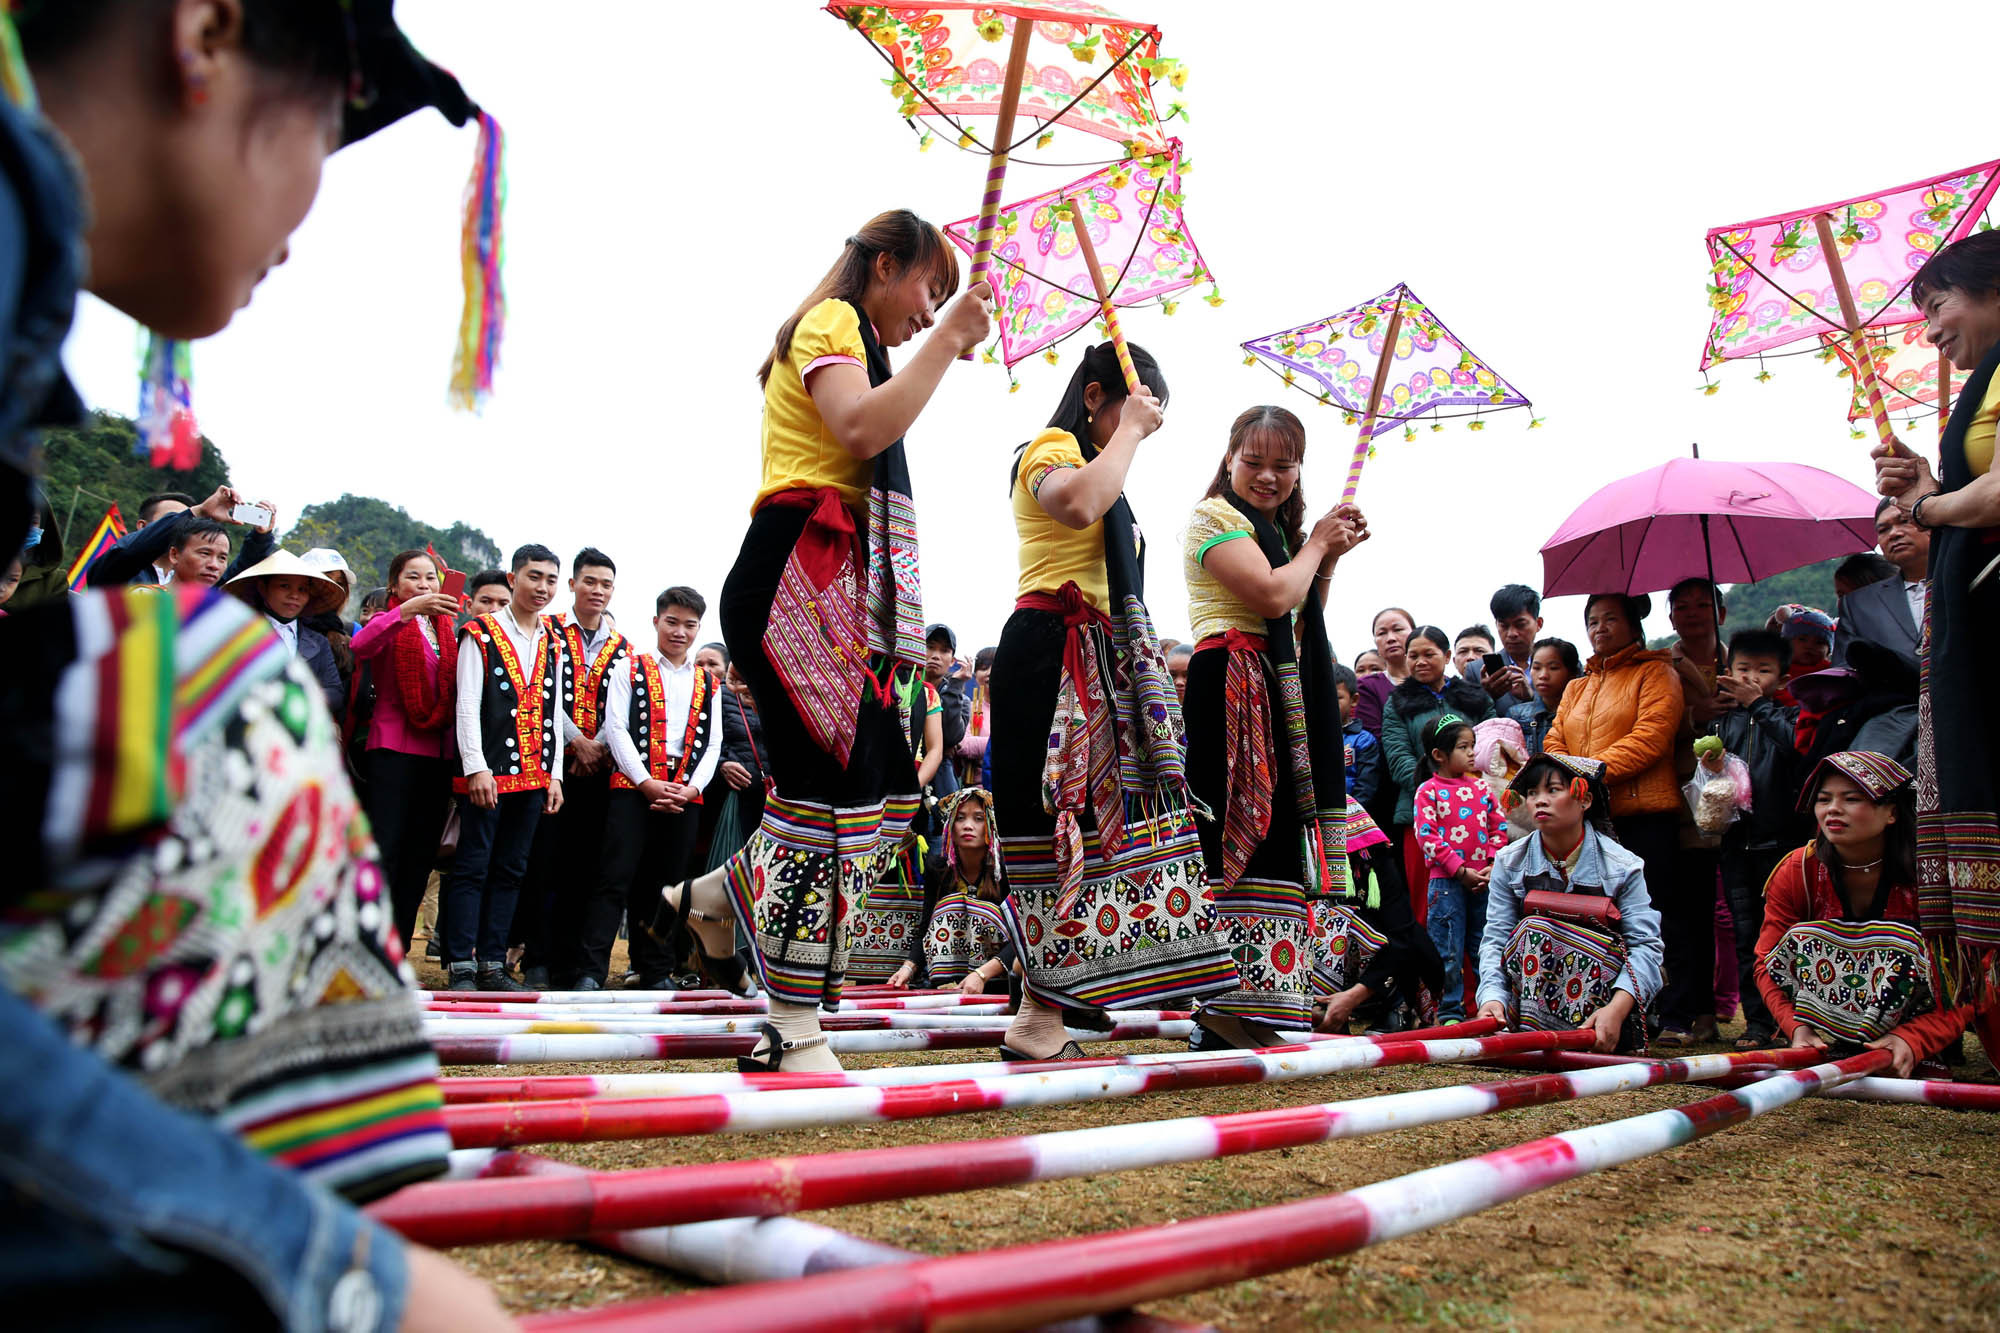 Lễ hội Hang Bua là nơi có nhiều chương trình văn nghệ cộng đồng như nhảy sạp, đánh trống, cồng chiêng, khắc luống... Du khách có thể trực tiếp tham gia, hòa quyện cùng tiếng nhạc trầm bổng rộn vang của đồng bào Thái. 